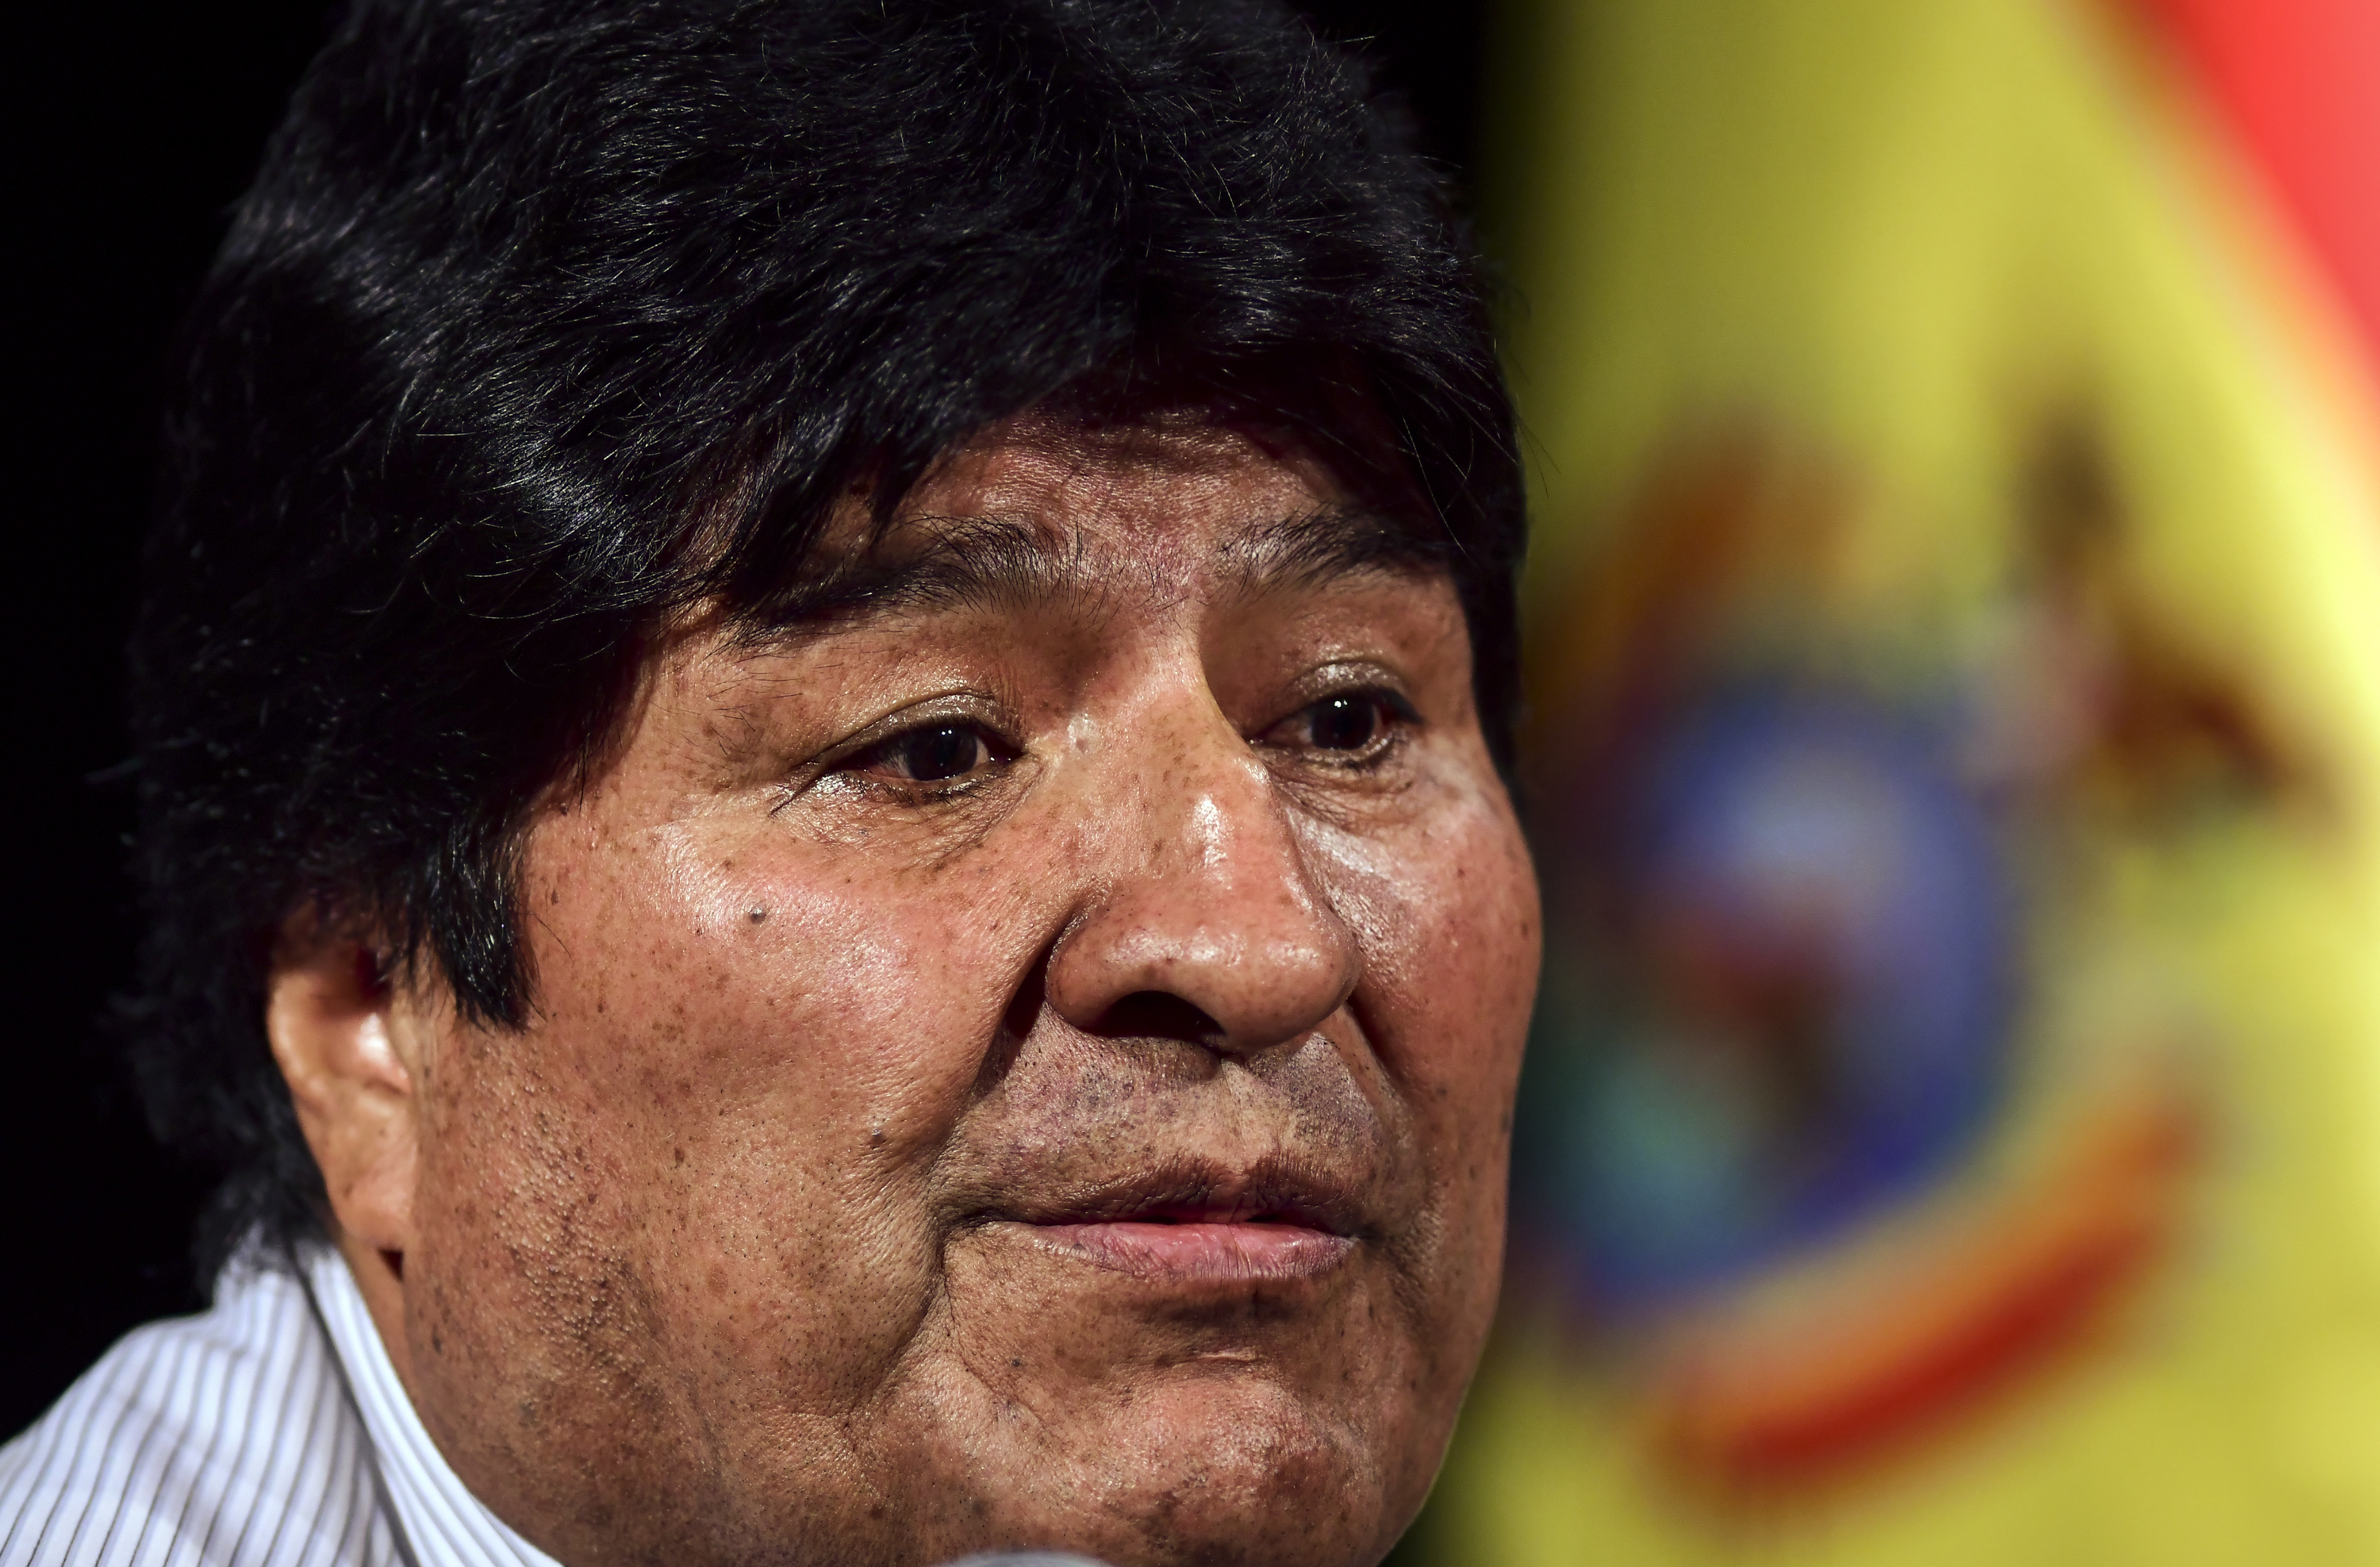 ALnavío: Por qué Evo Morales será más peligroso que antes si regresa al poder en Bolivia